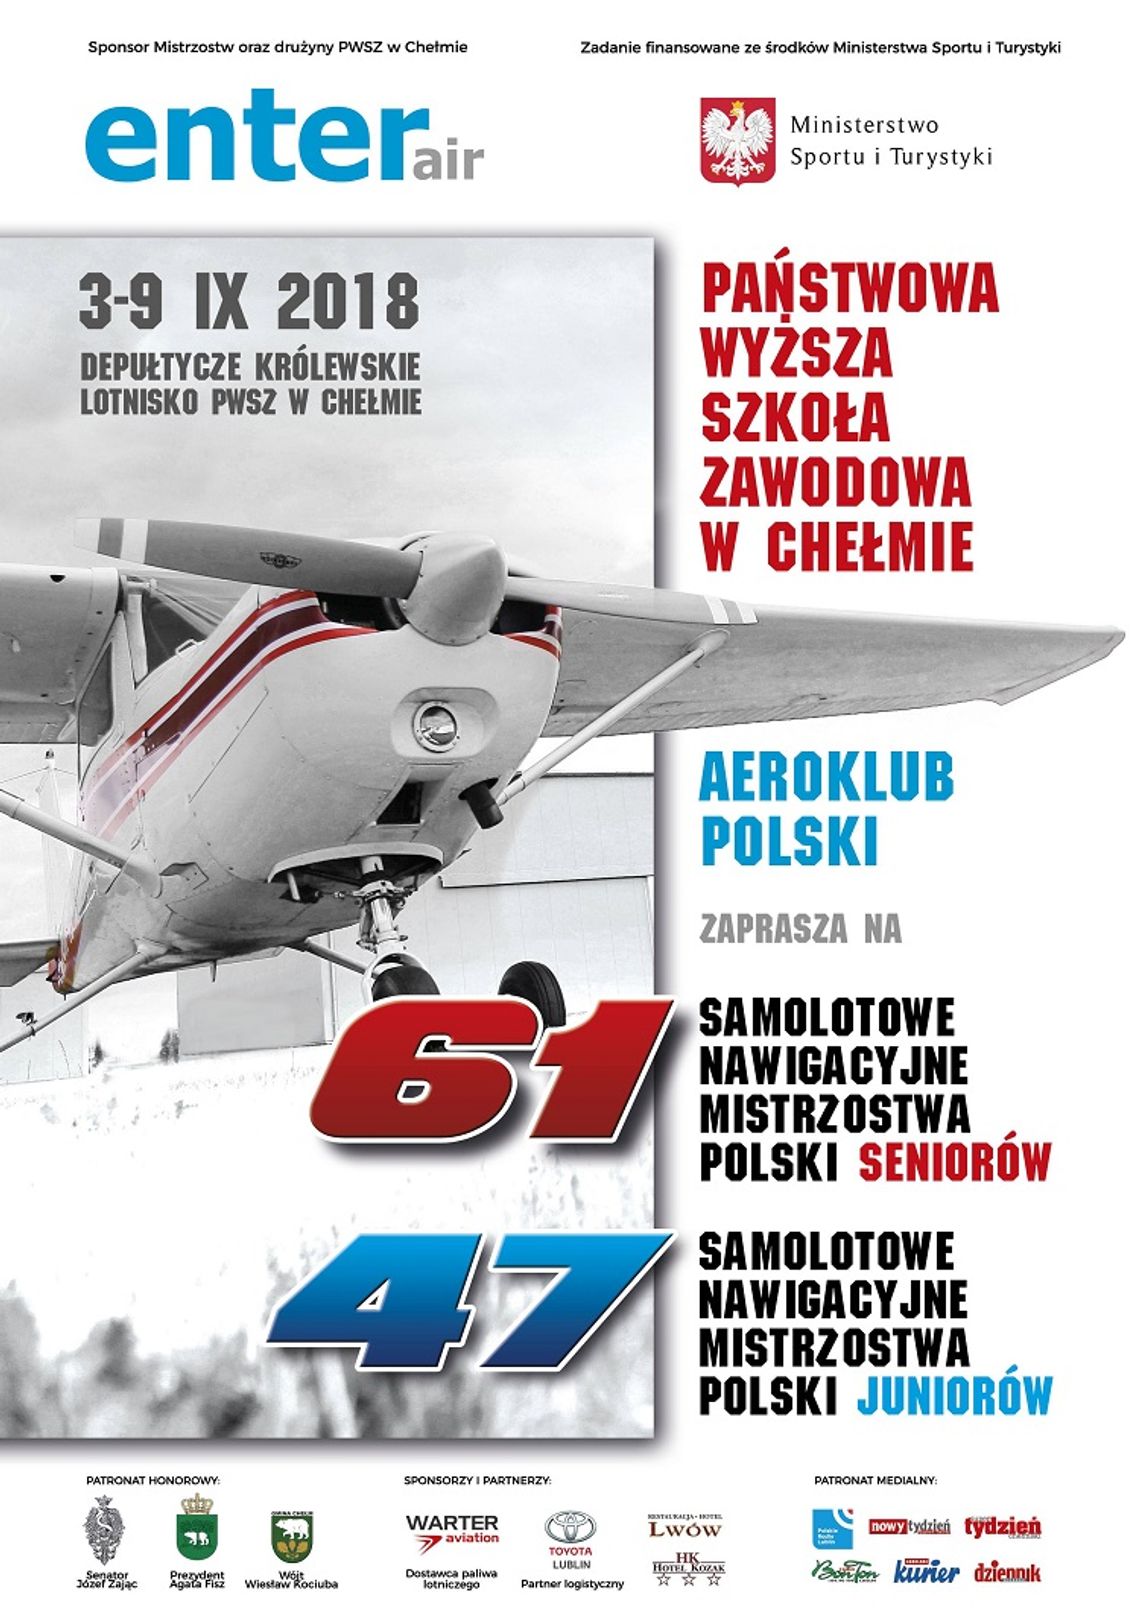 PWSZ organizatorem Samolotowych Nawigacyjnych Mistrzostw Polski 